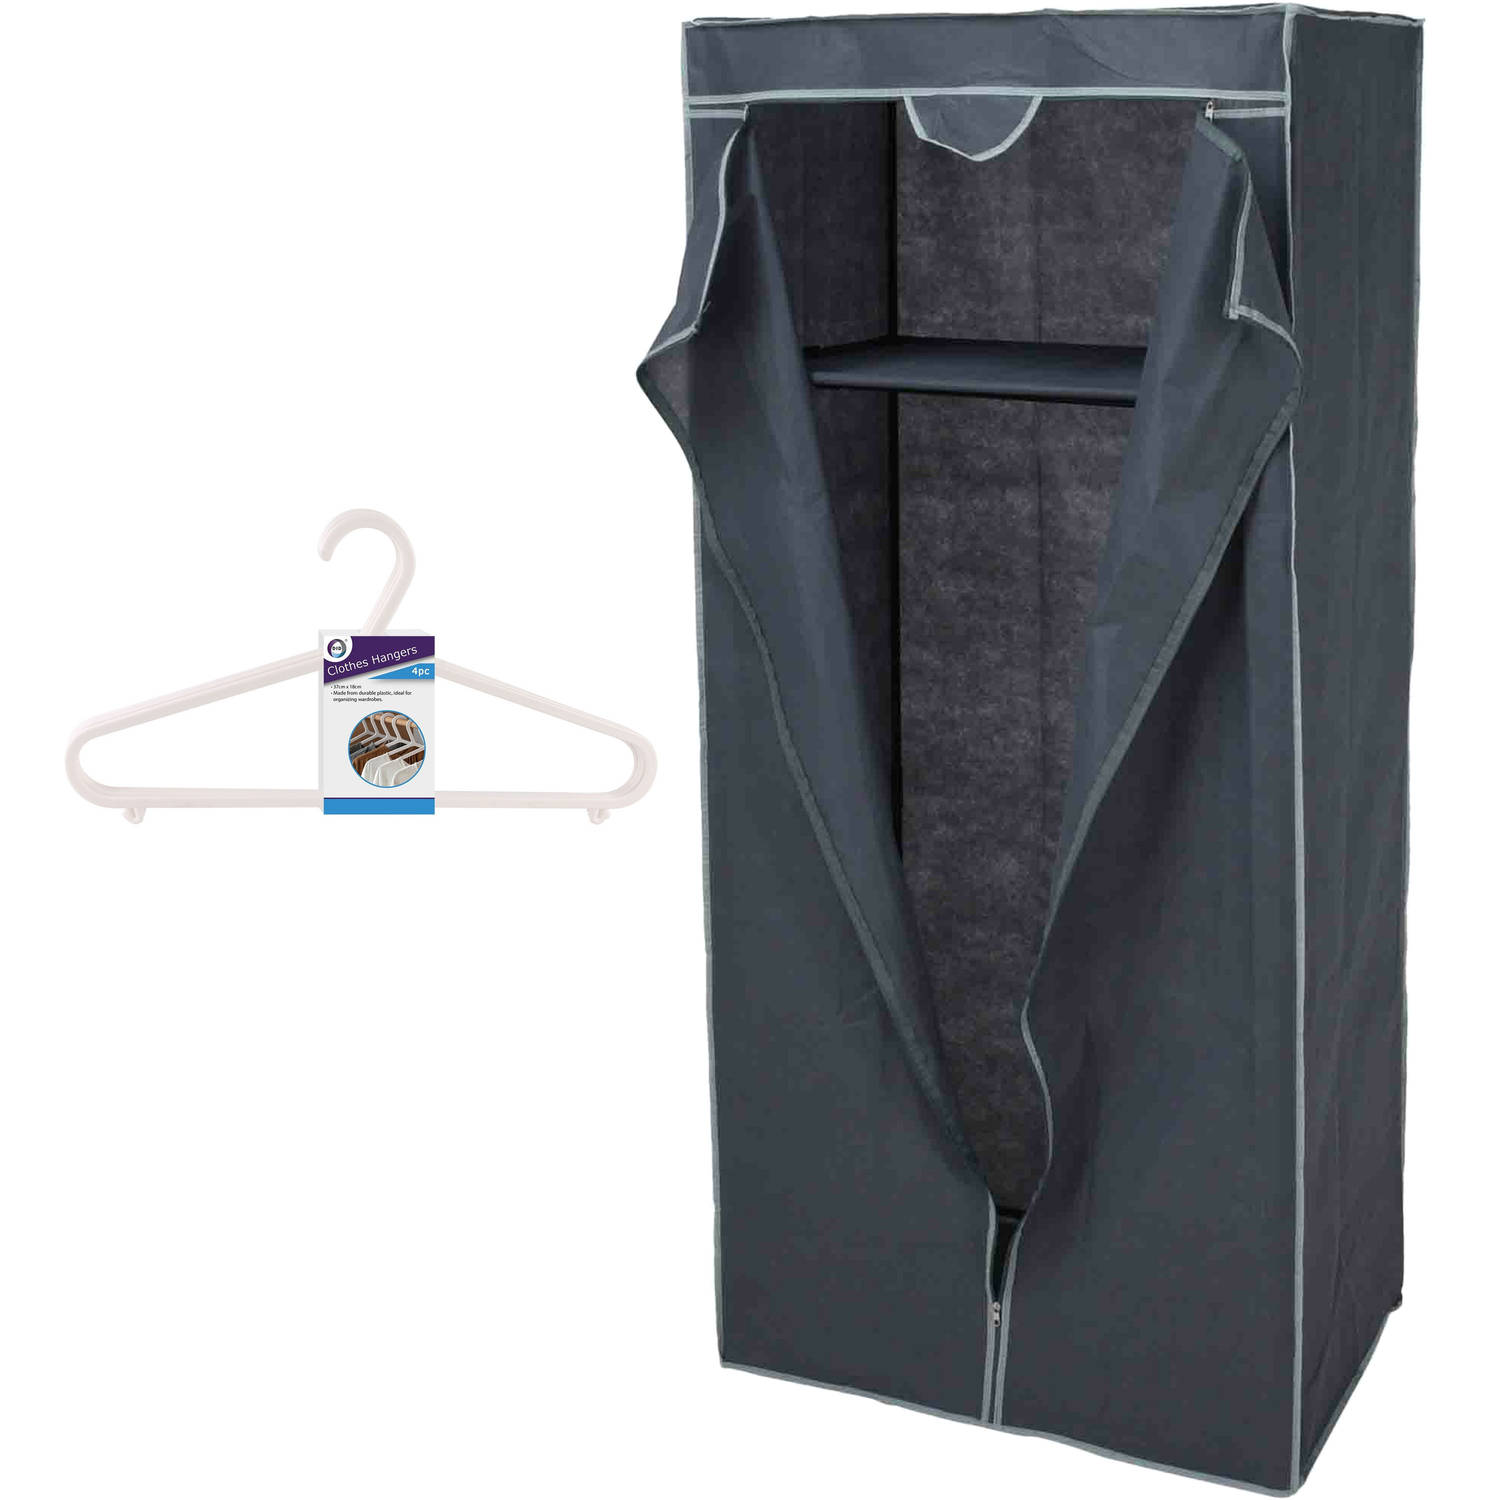 Mobiele opvouwbare kledingkast grijs 75 x 160 cm met 12x kledinghangers wit Campingkledingkasten